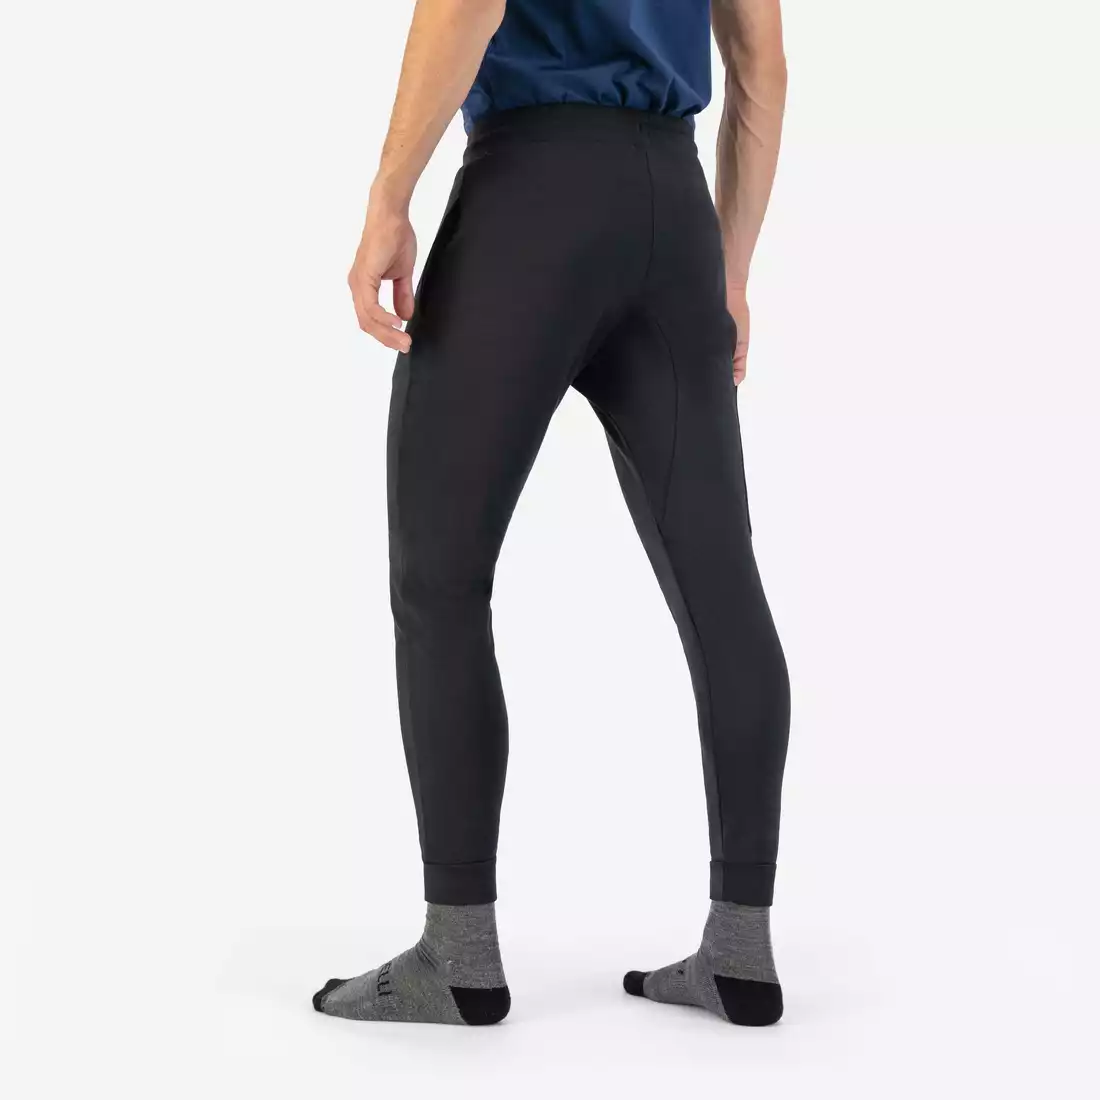 ROGELLI TRAINING II męskie spodnie treningowe, czarne